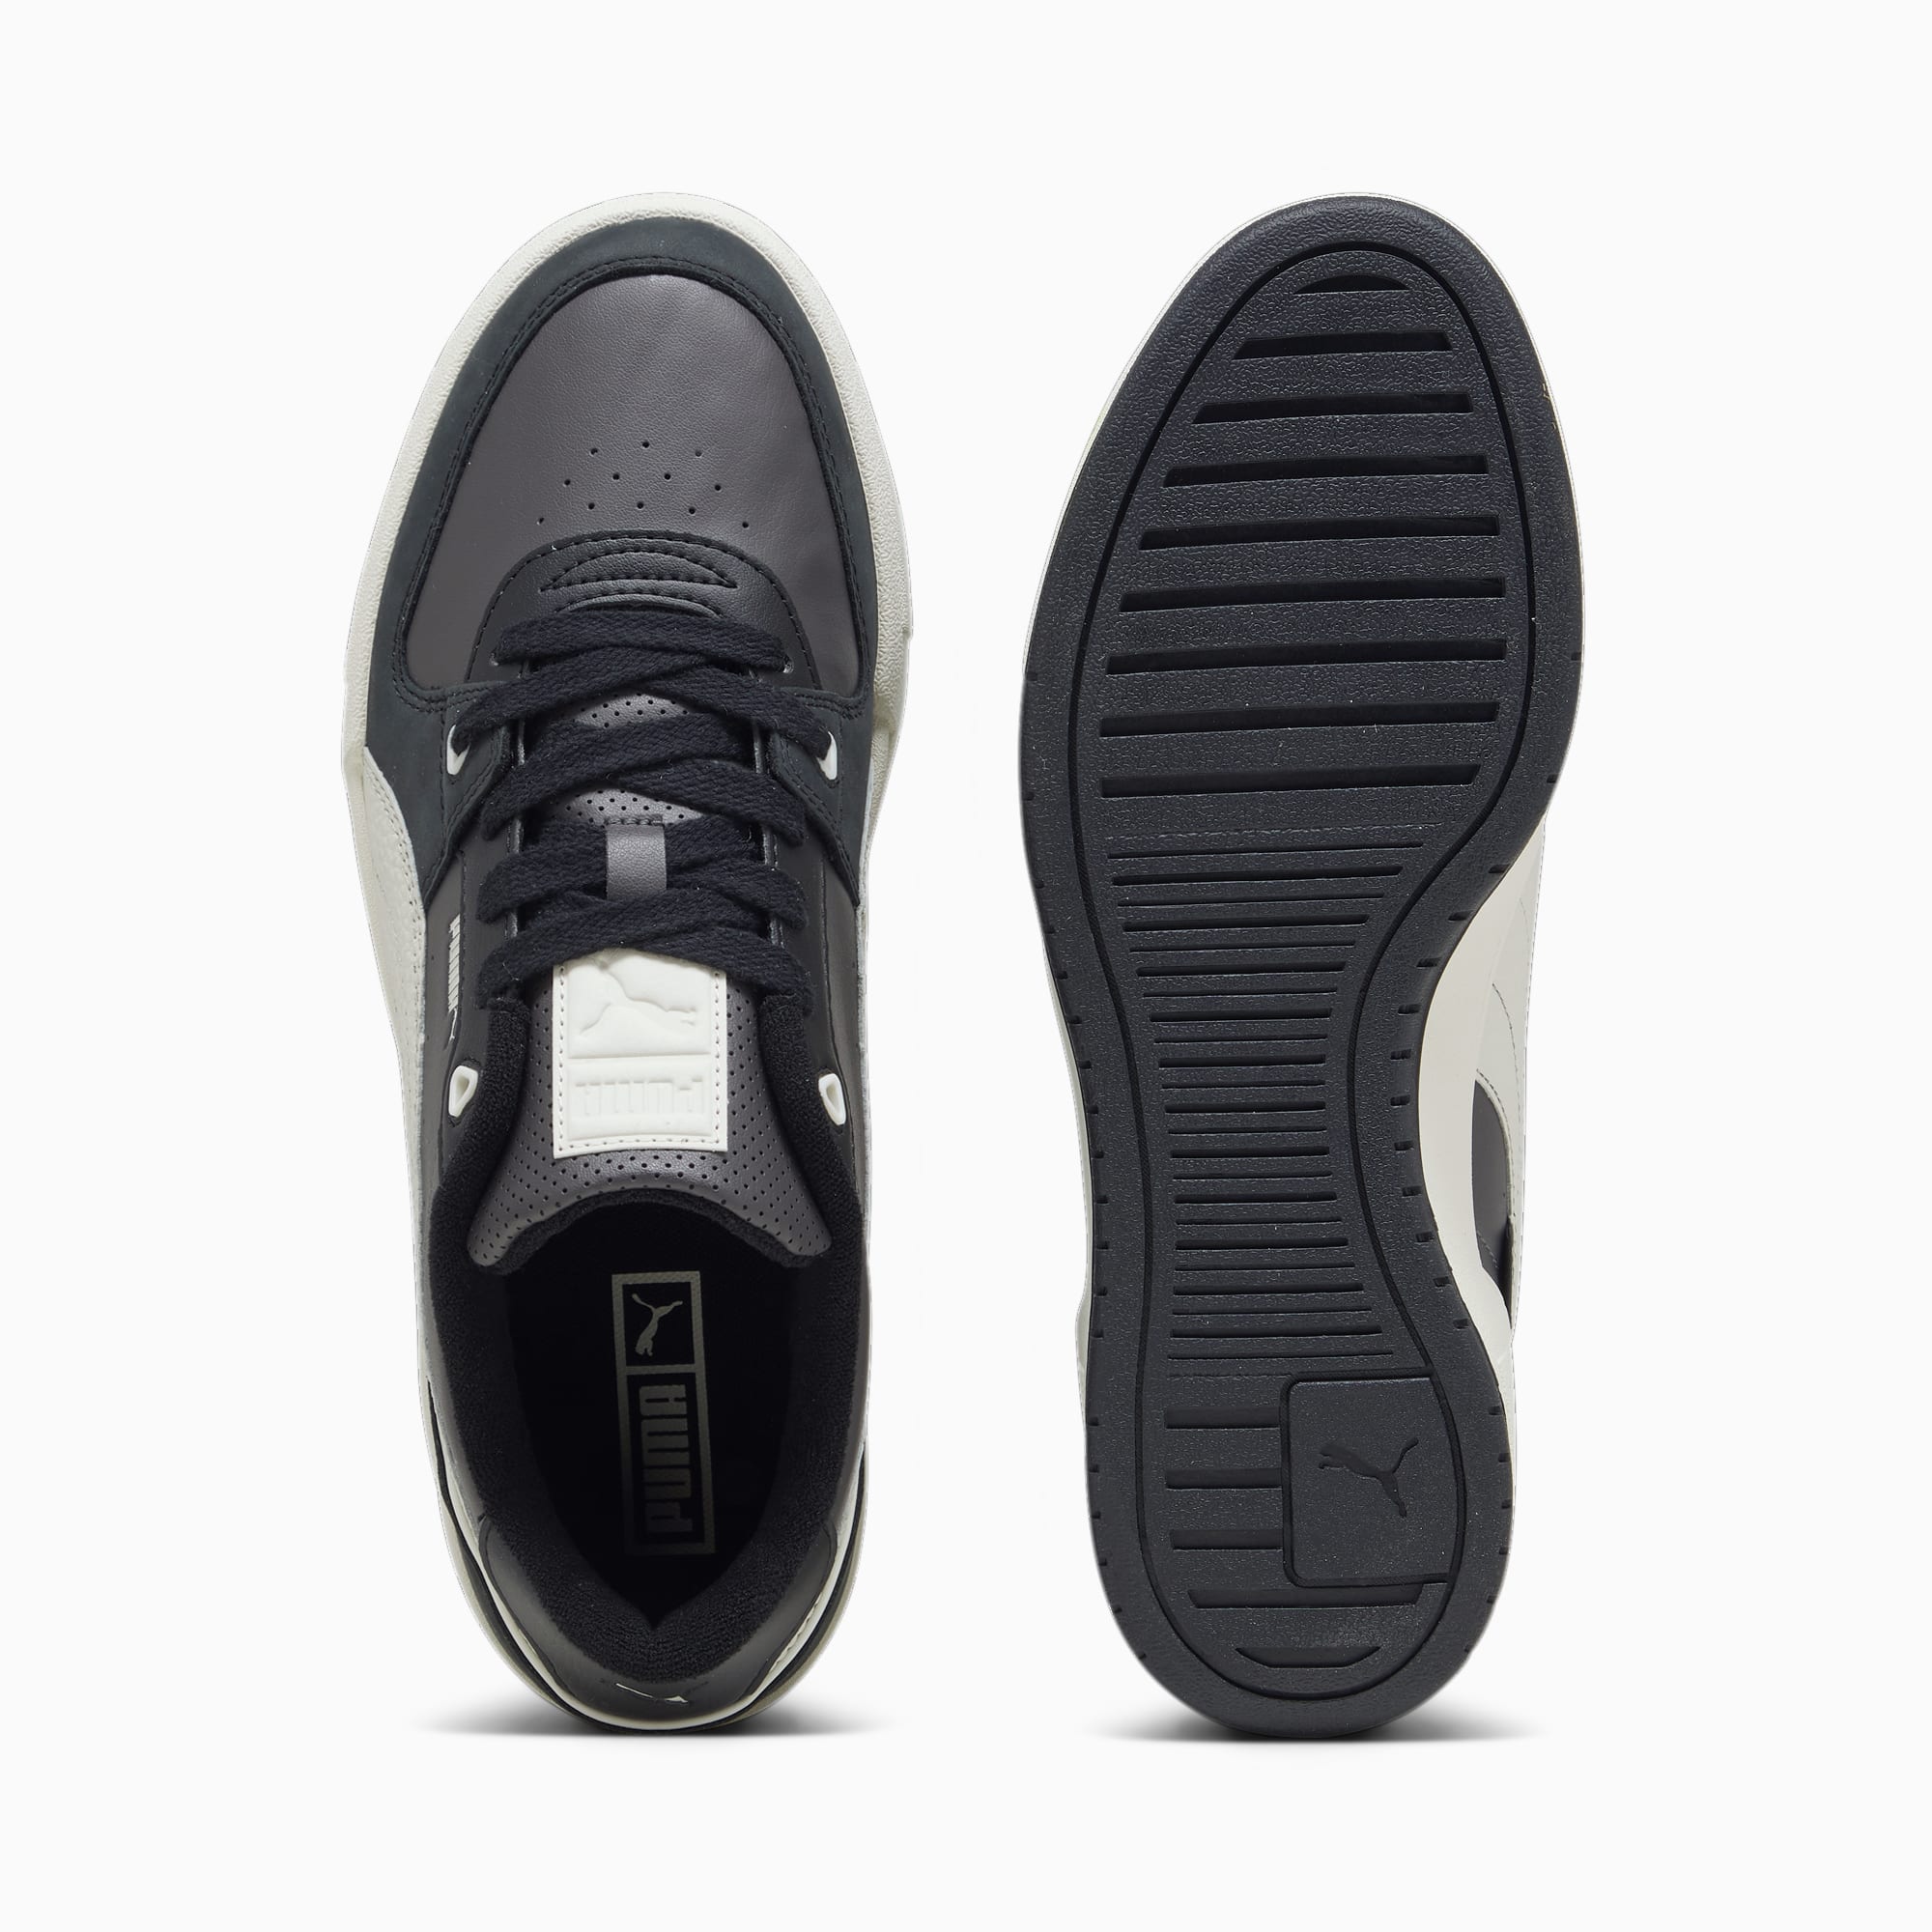 PUMA Chaussure Sneakers CA Pro Lux II Pour Homme, Gris/Noir